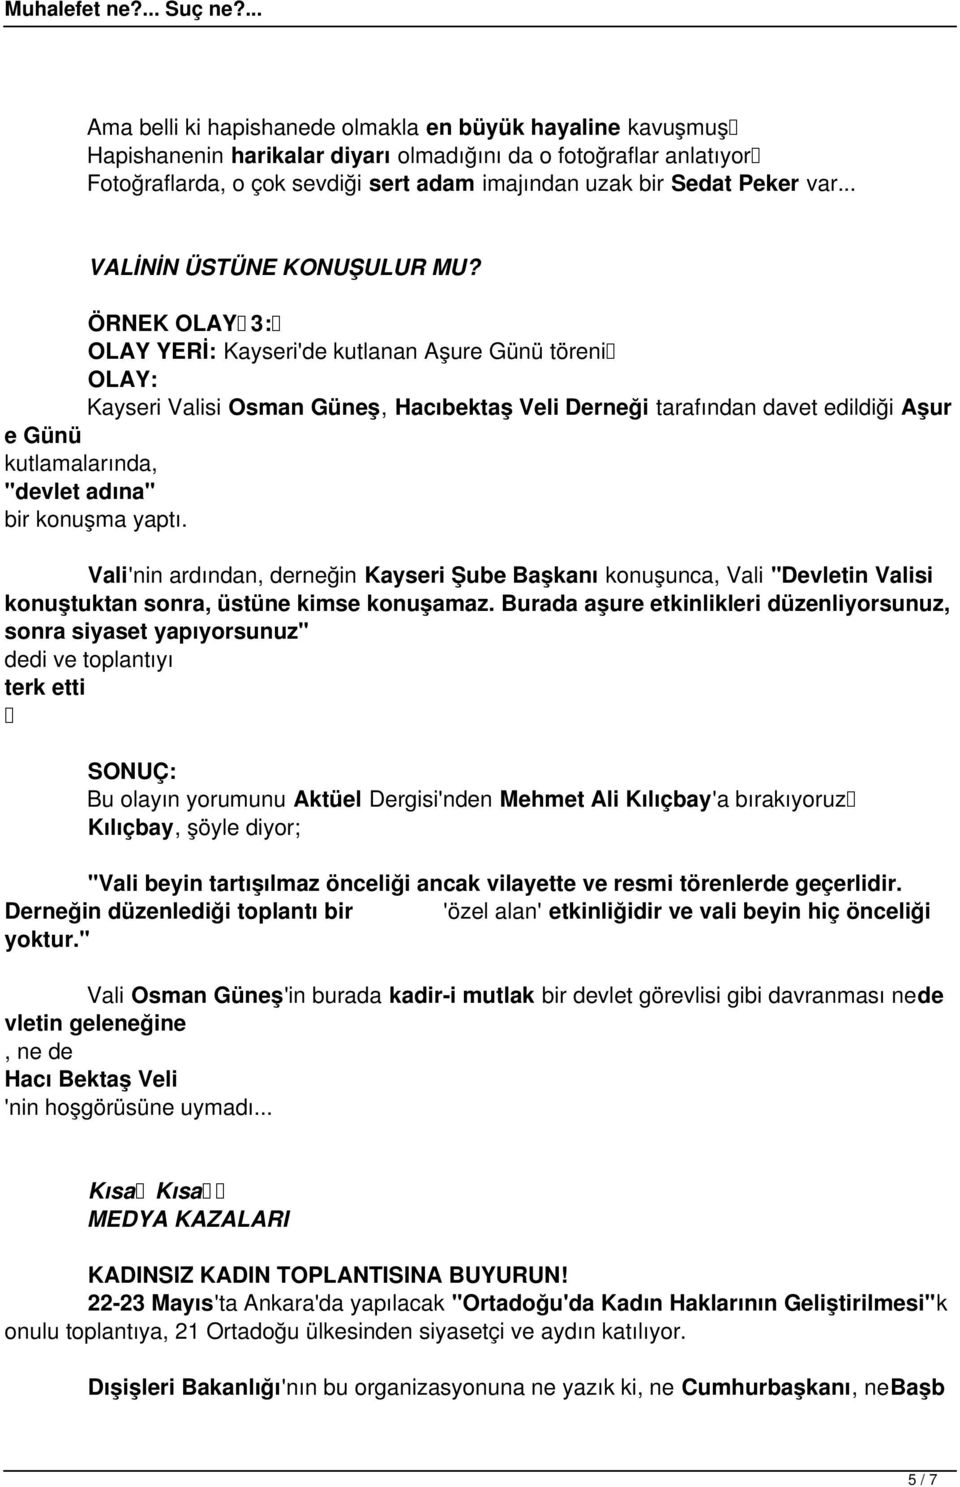 ÖRNEK OLAY 3: OLAY YERİ: Kayseri'de kutlanan Aşure Günü töreni OLAY: Kayseri Valisi Osman Güneş, Hacıbektaş Veli Derneği tarafından davet edildiği Aşur e Günü kutlamalarında, "devlet adına" bir